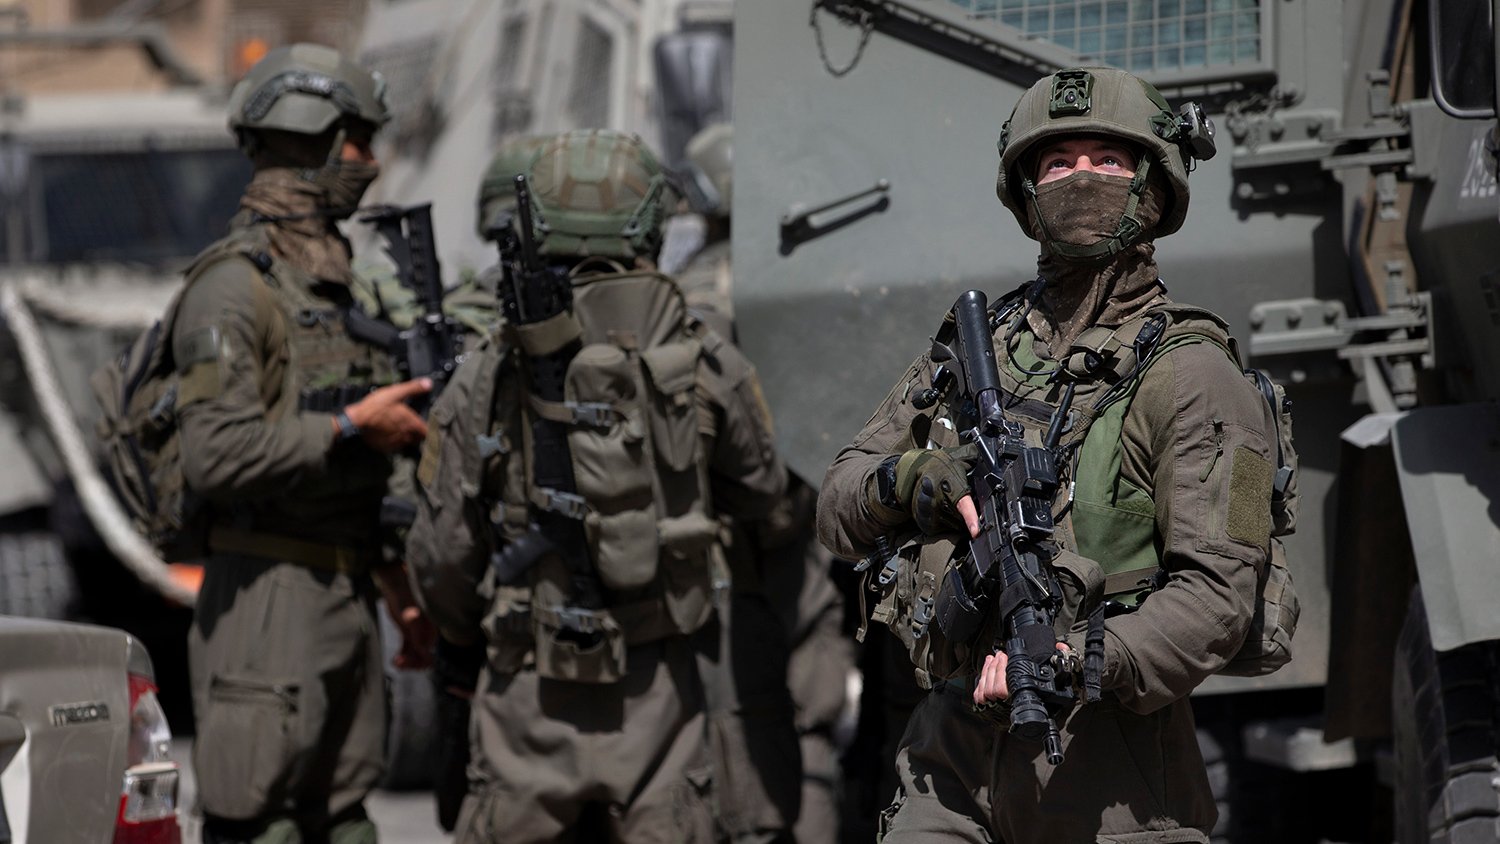 Իսրայելական բանակը հրթիռային հարվածներ է հասցնում «Համասի» անդամների տներին և գրասենյակներին